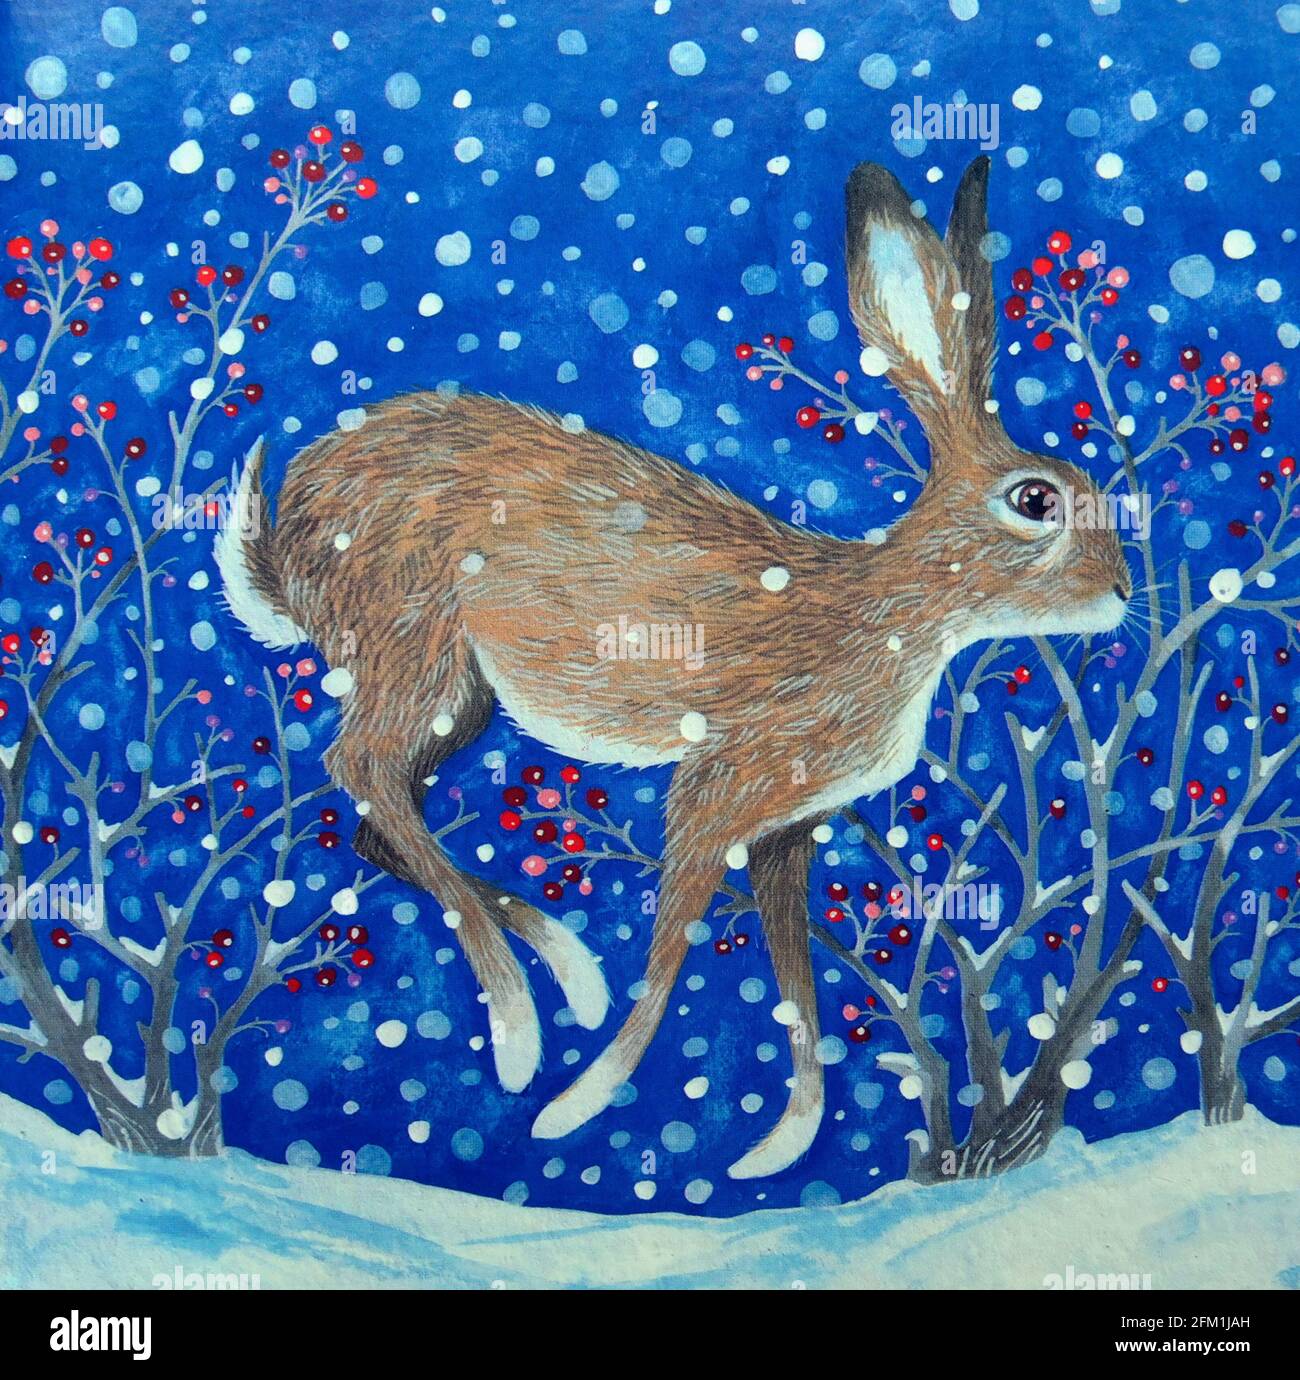 Illustration de la carte de Noël. Lièvre dans la neige. Banque D'Images